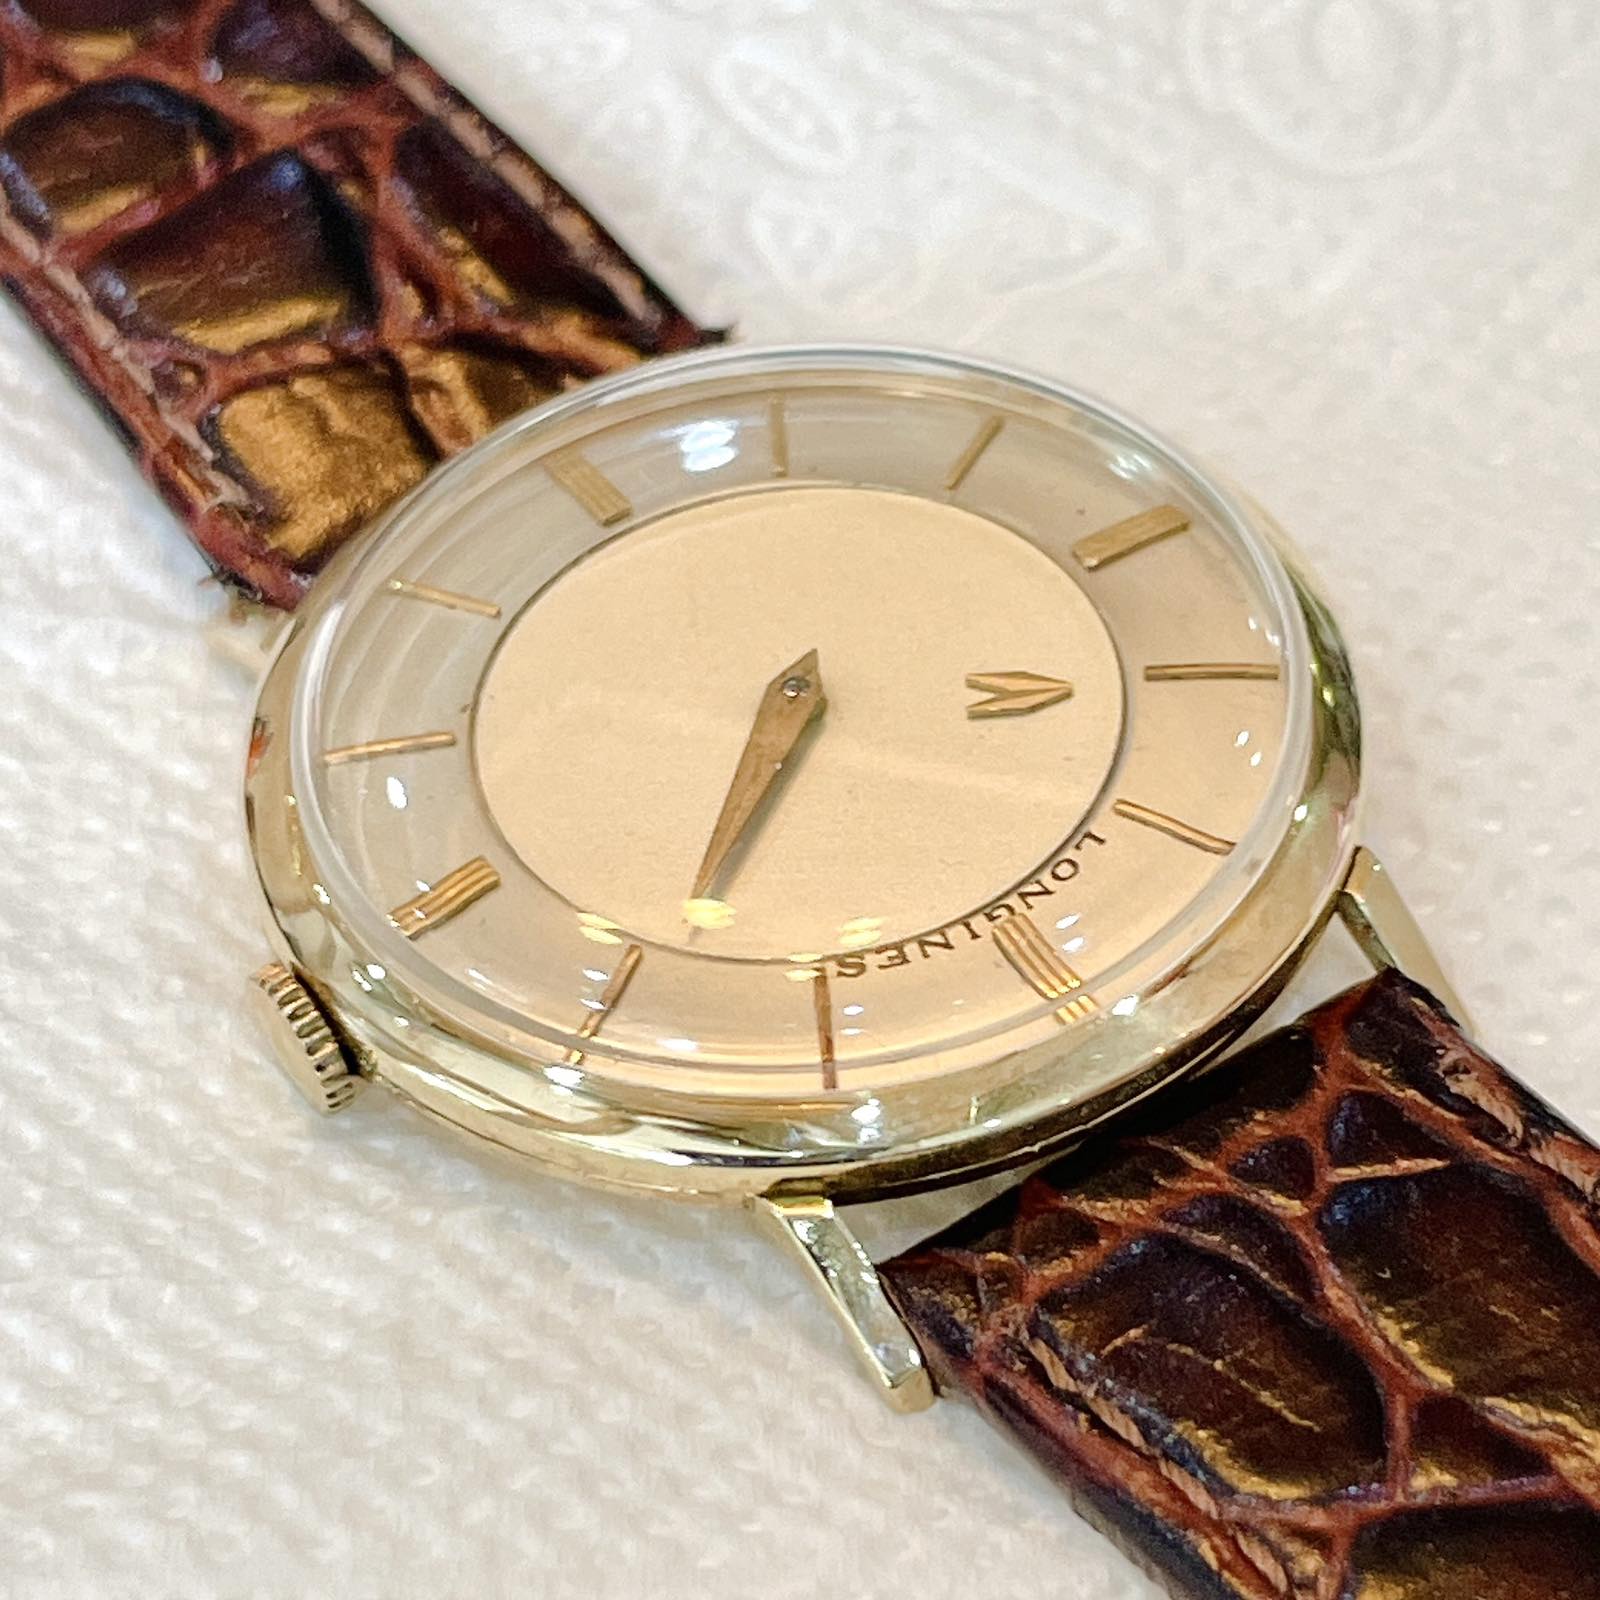 Đồng hồ cổ Longines kim đĩa lên dây bọc vàng 10k chính hãng thụy Sĩ 